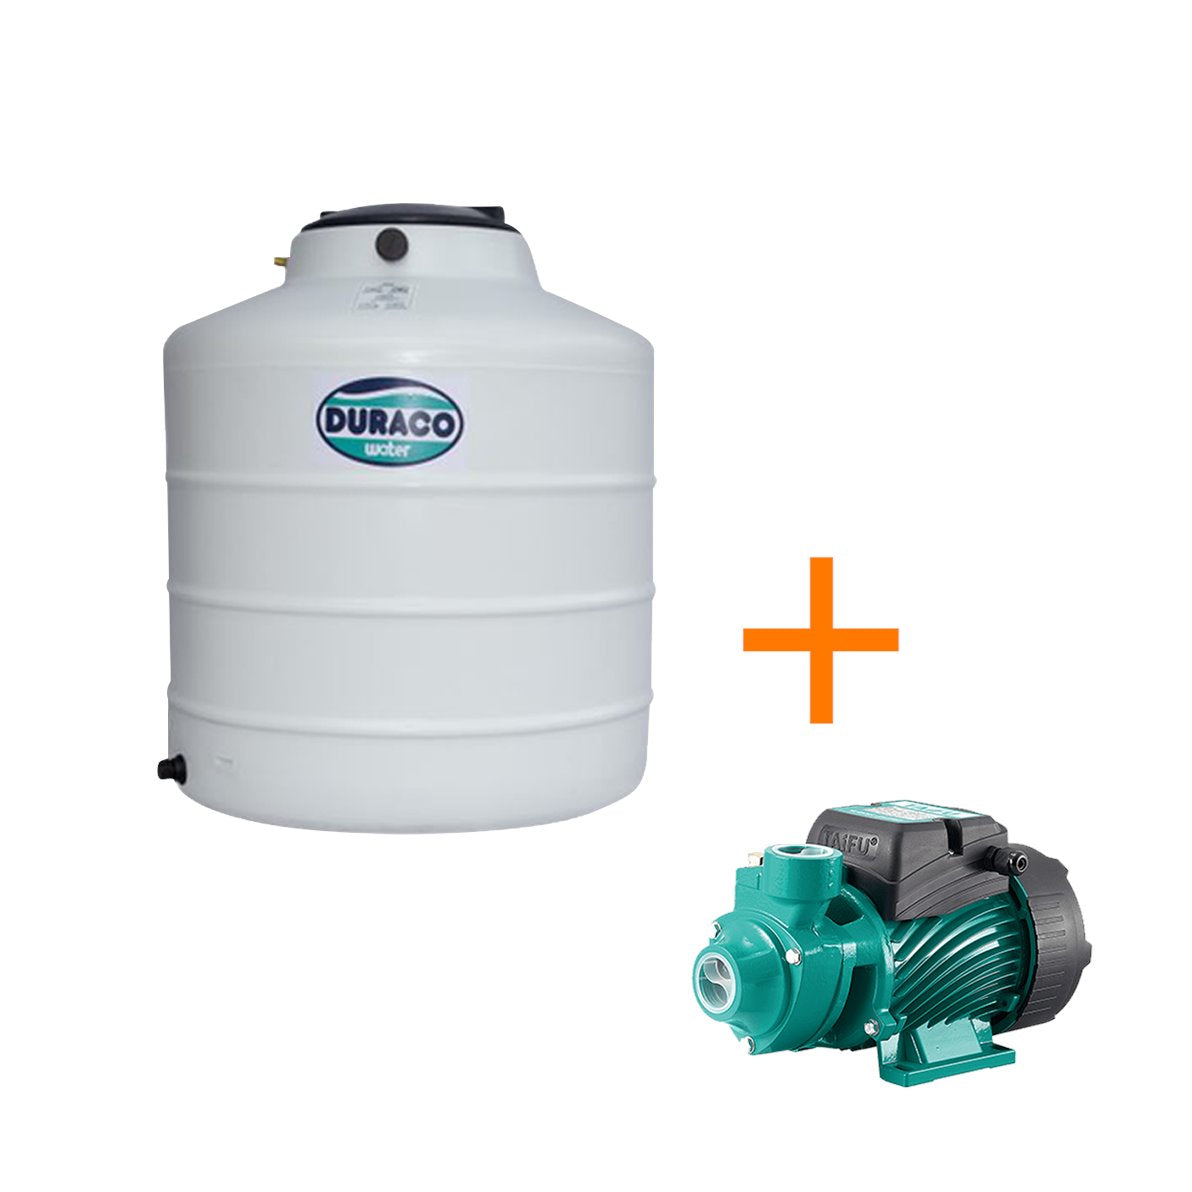 Duraco Water Tank & Pump Water Storage Tank Sofo Soler 